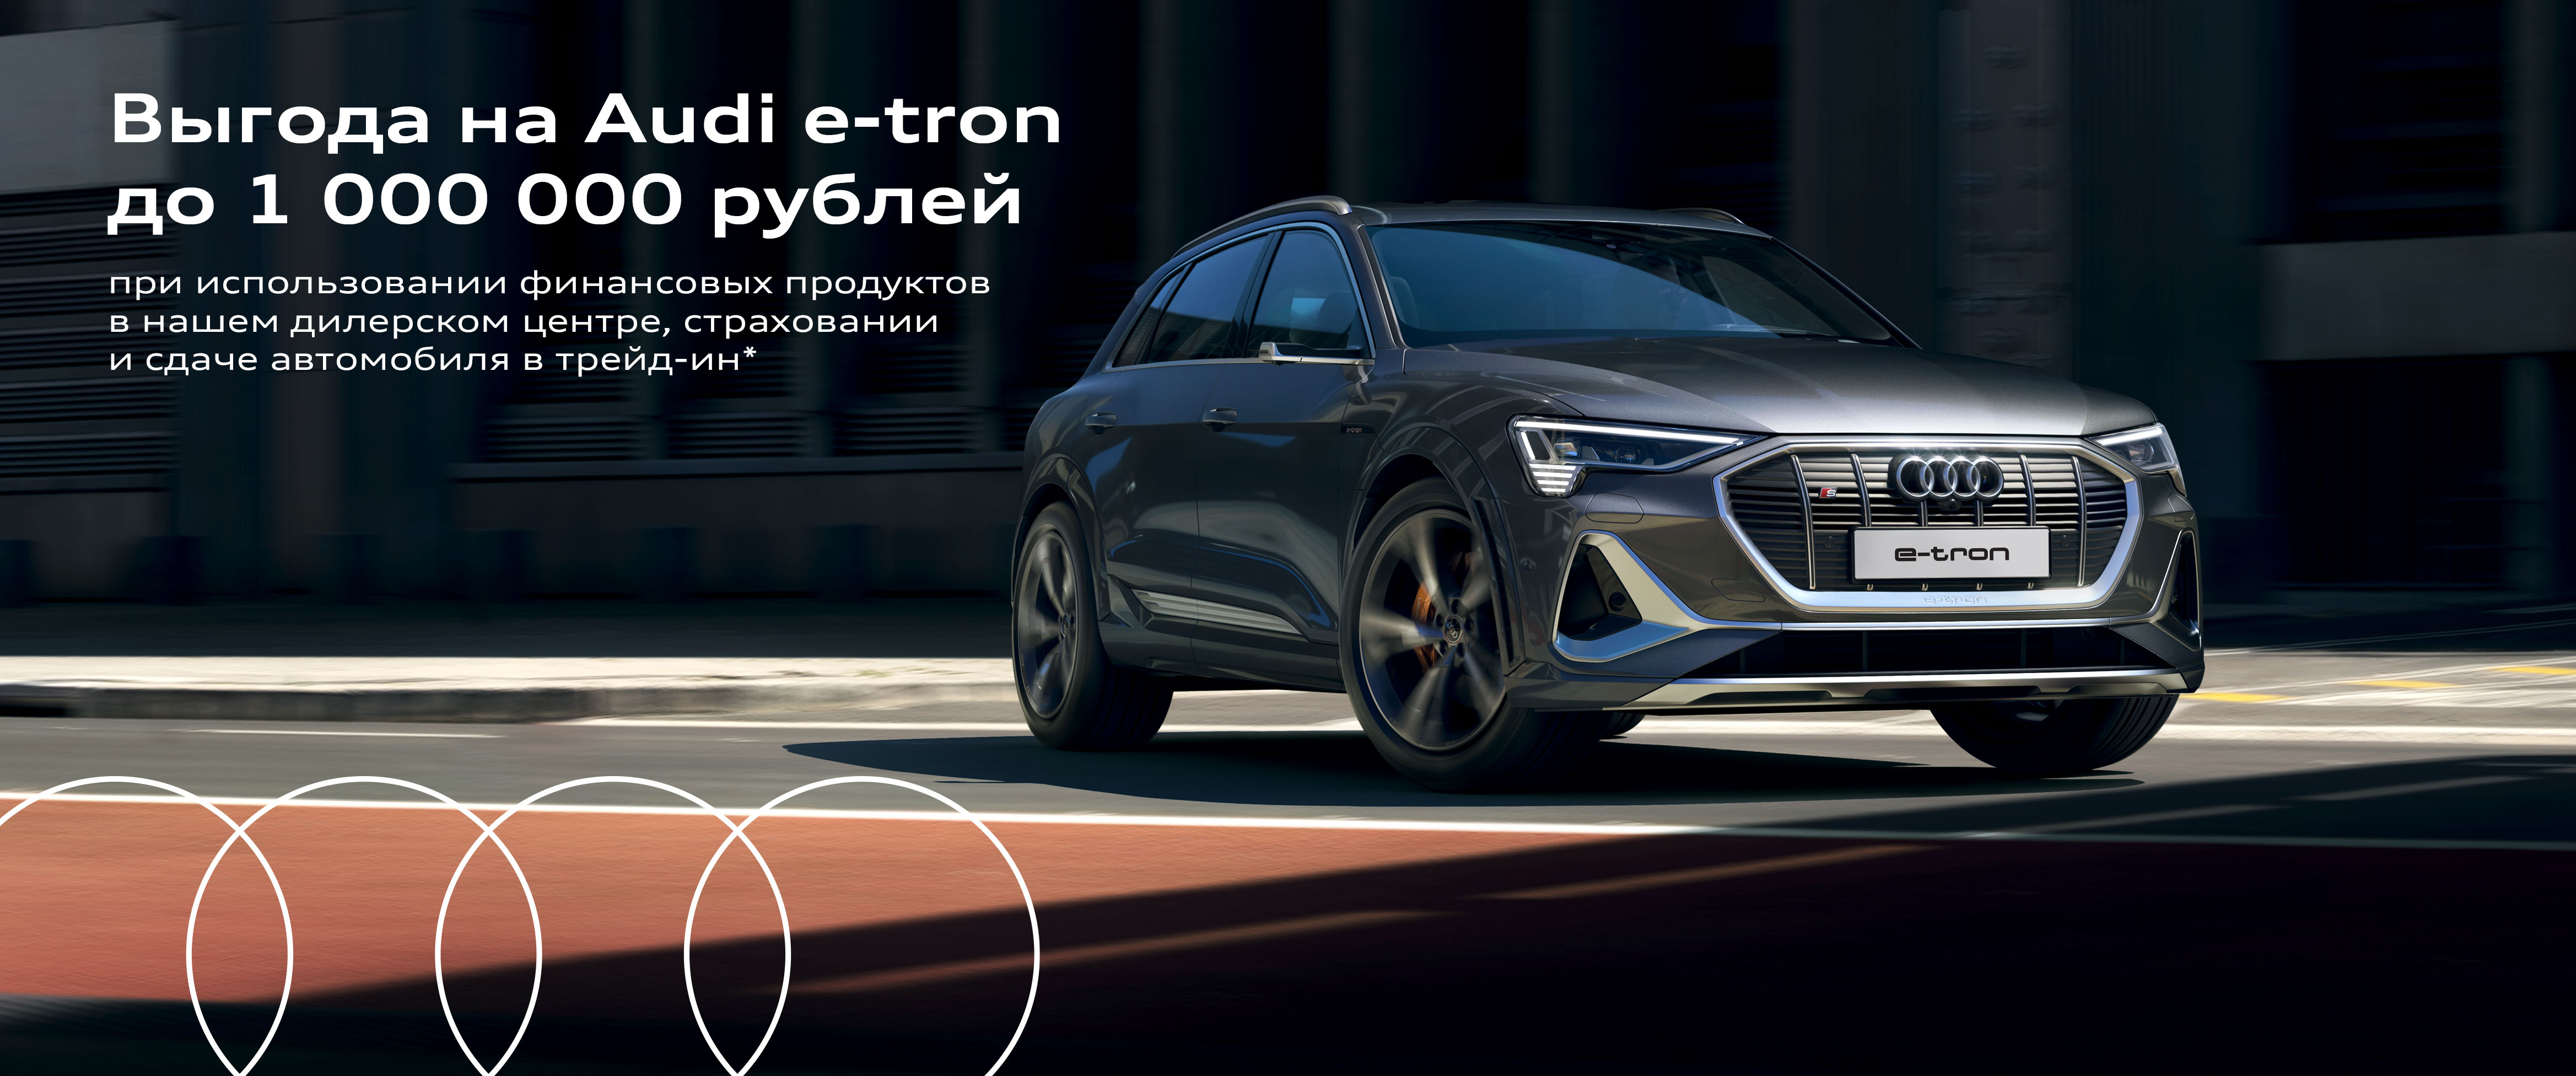 Выгода на автомобиль Audi e-tron до 1 000 000 рублей*